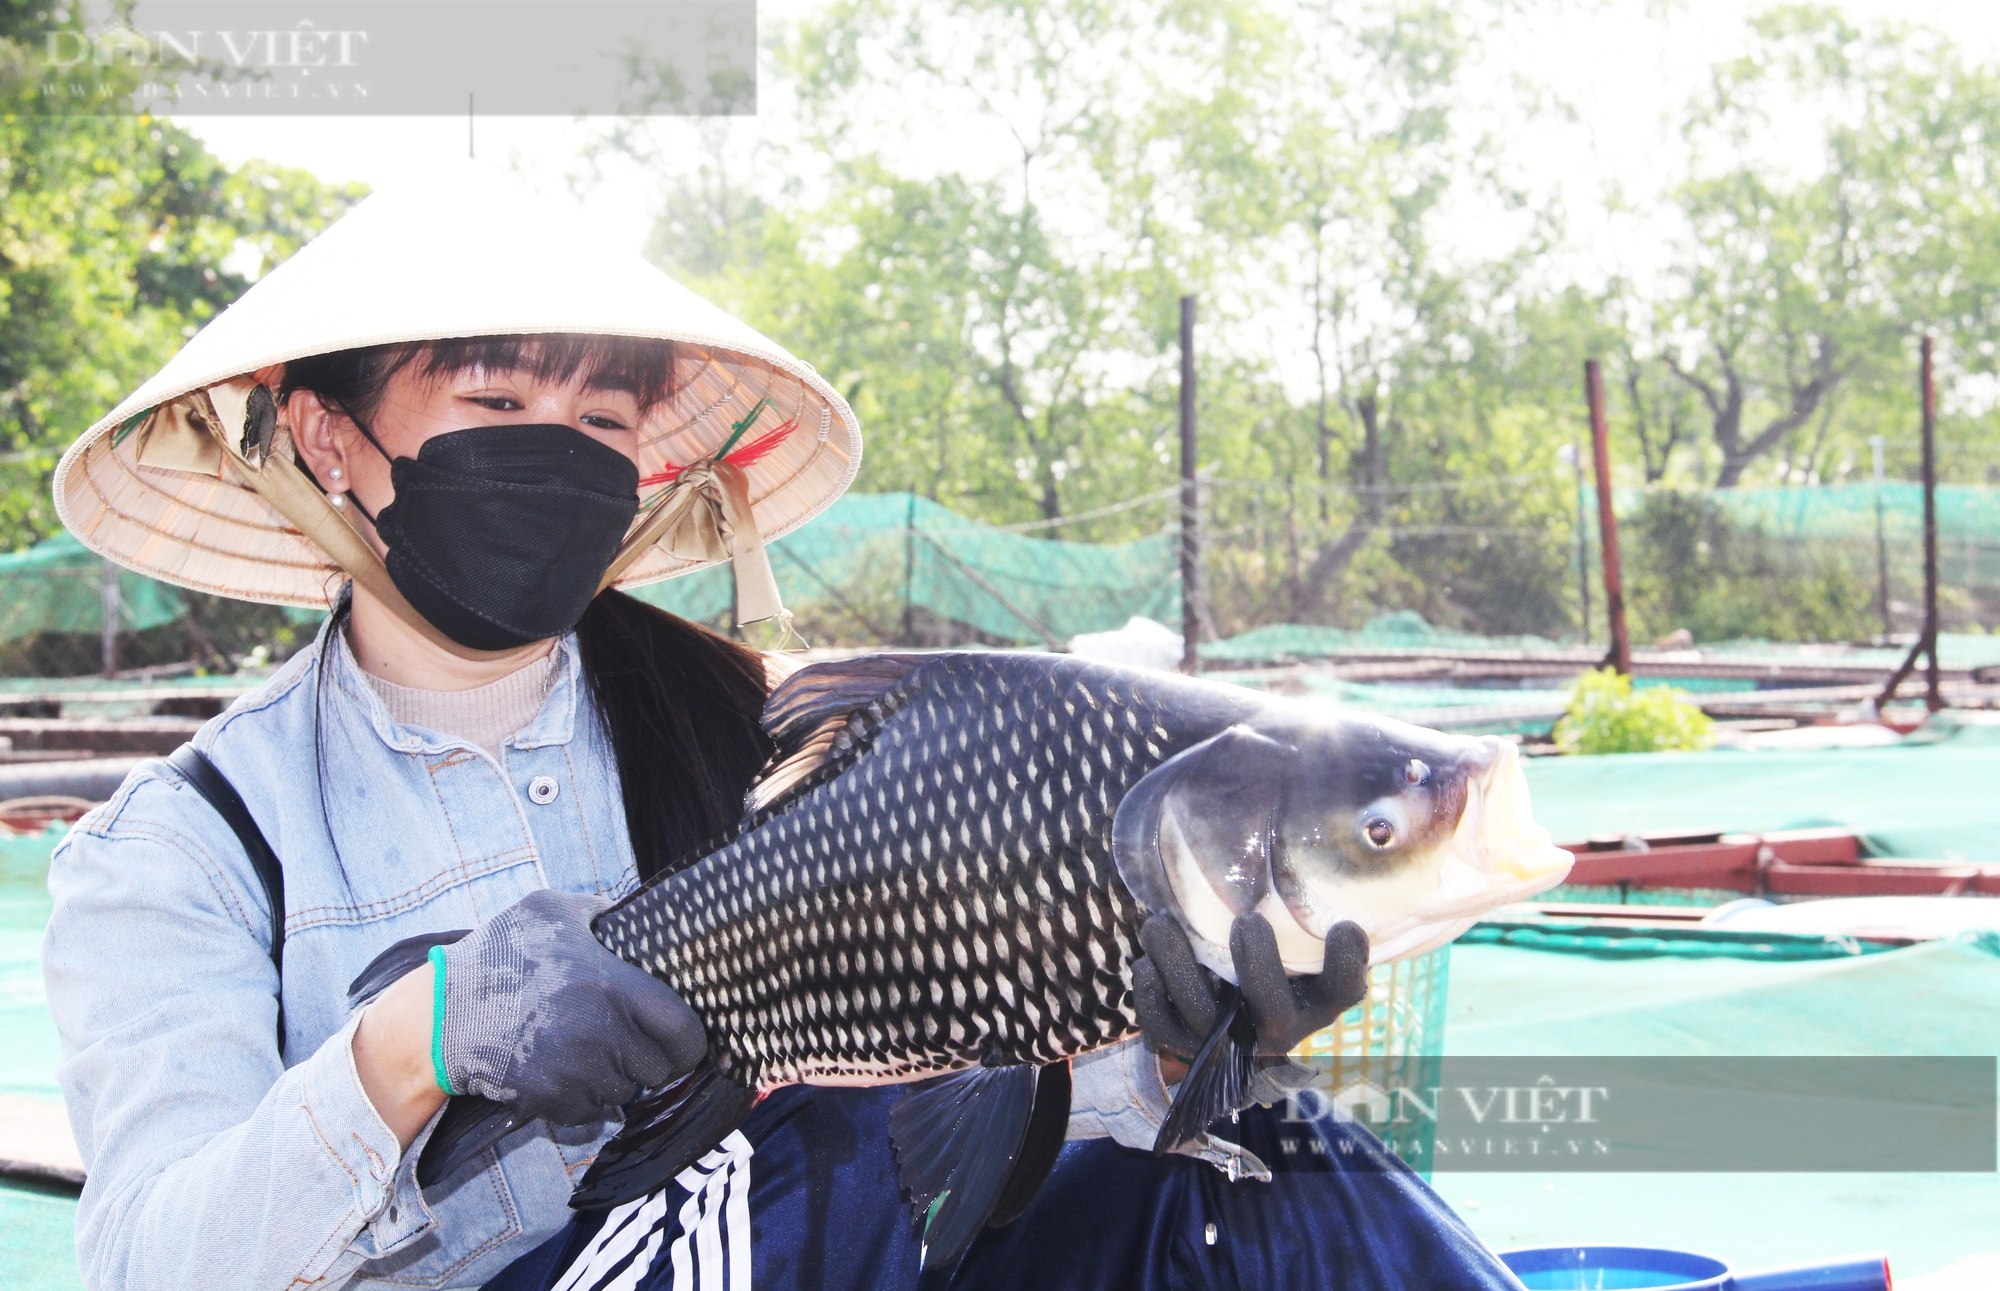 Từ bỏ cá điêu hồng, nữ nông dân 8X chuyển qua nuôi nhiều loại cá đặc sản quý hiếm trên sông Tiền - Ảnh 5.